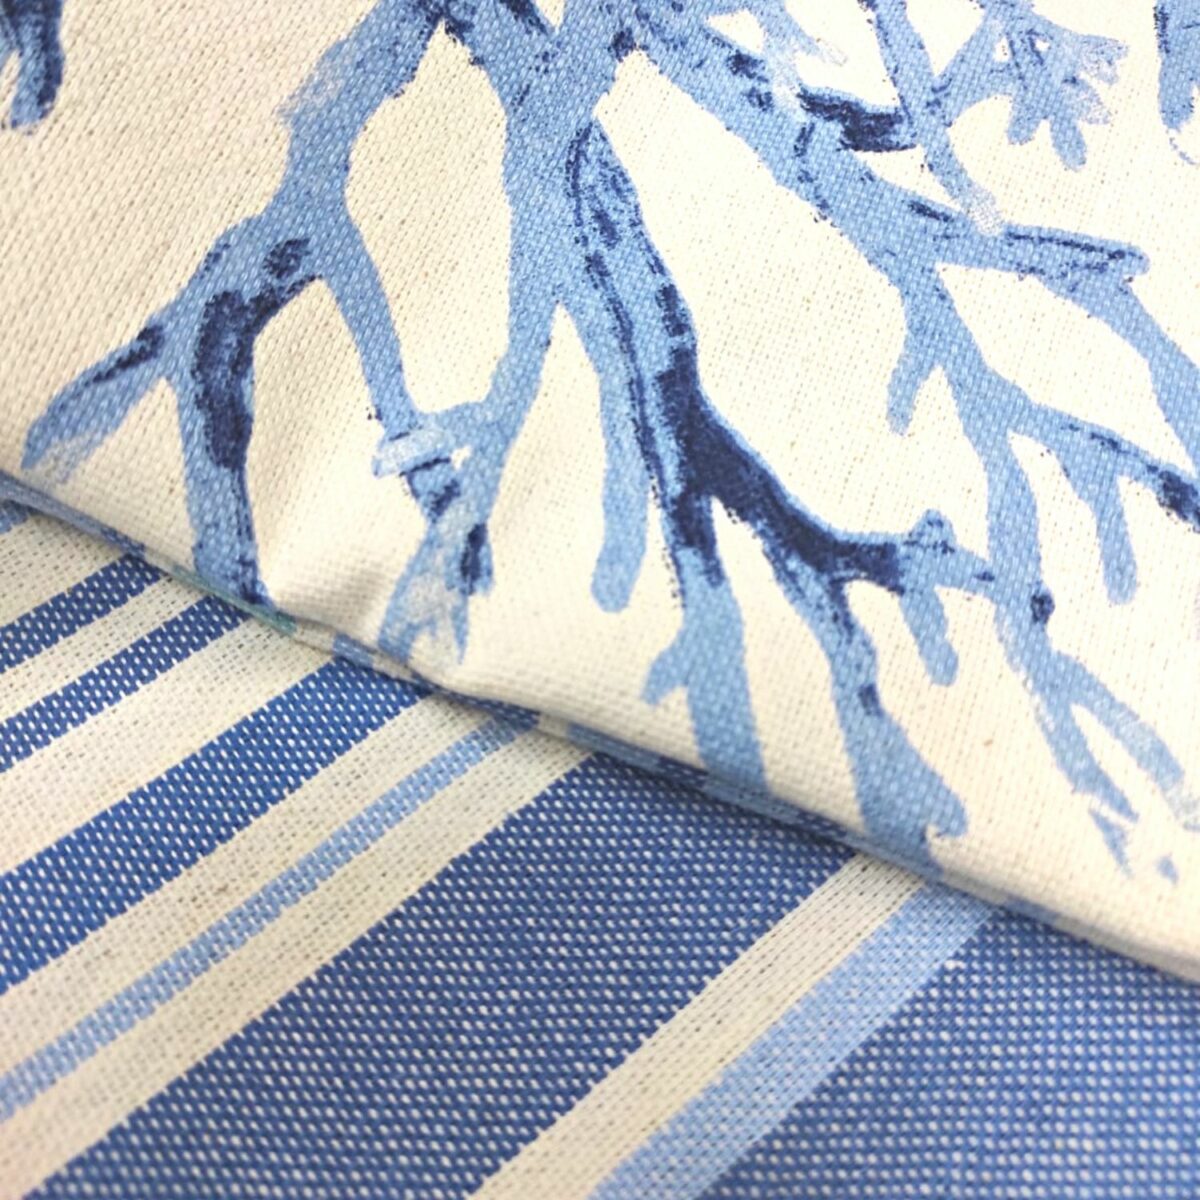 telo-mare-fouta-corallo-blu-frange-100-cotone-artigianale-dettaglio